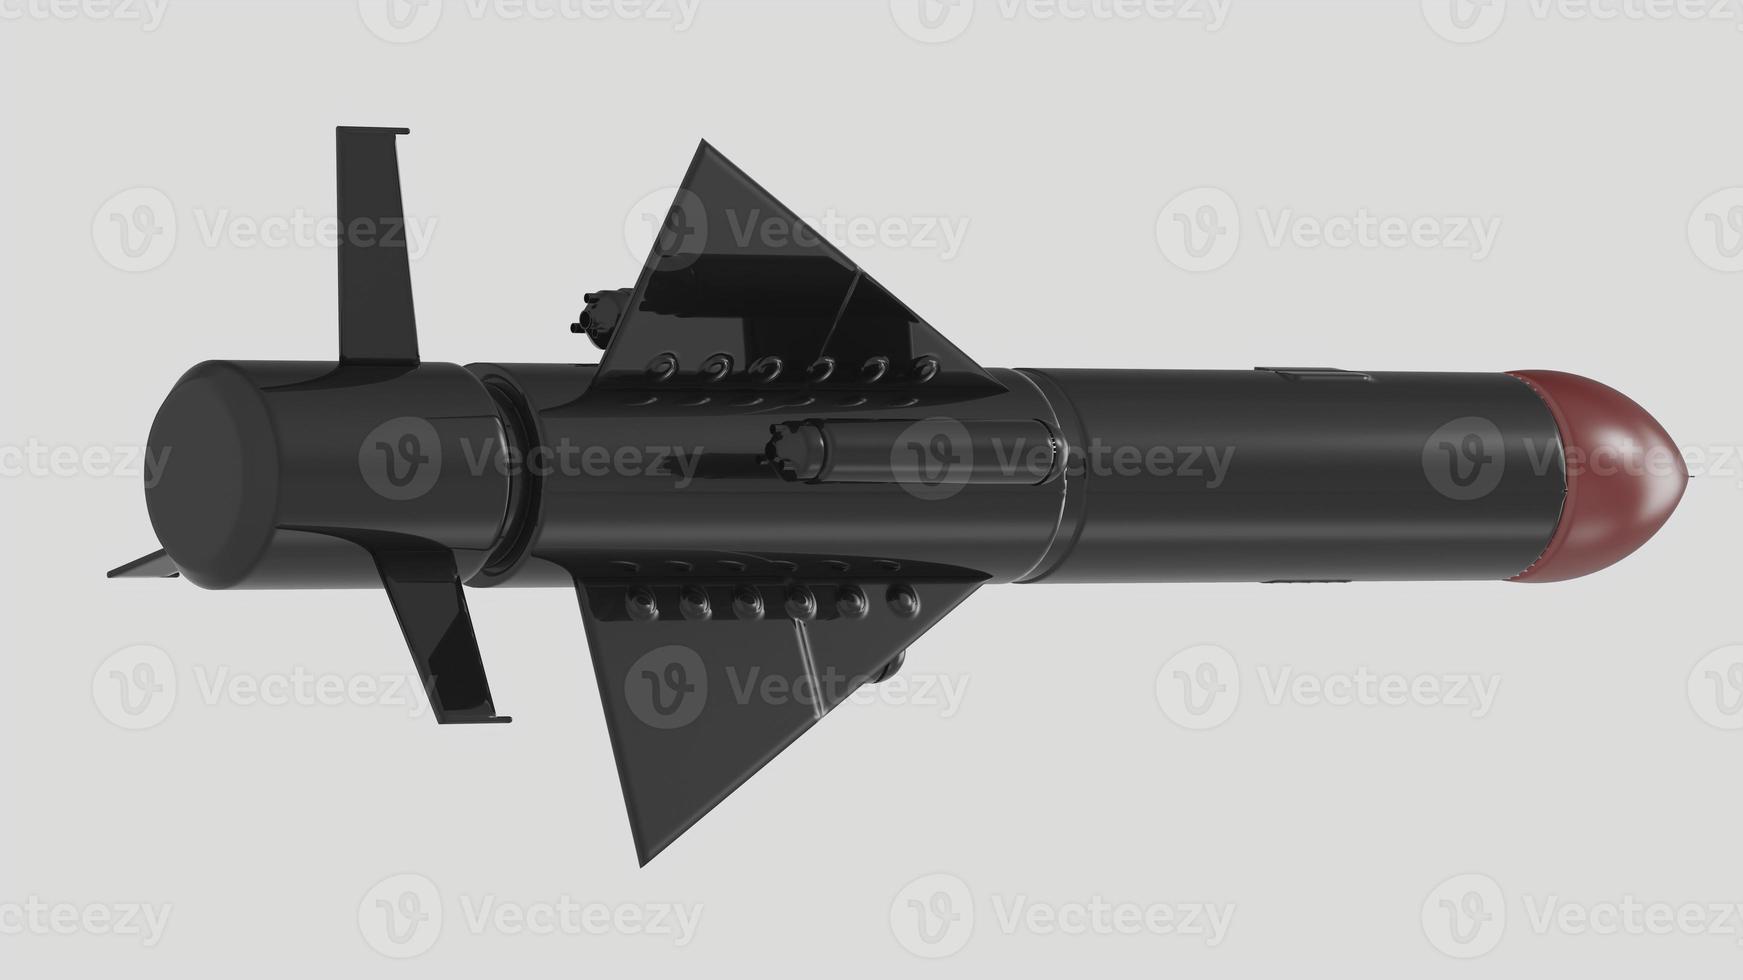 cohete misil guerra conflicto munición ojiva nuclear militar arma nuke 3d ilustración nave espacial foto